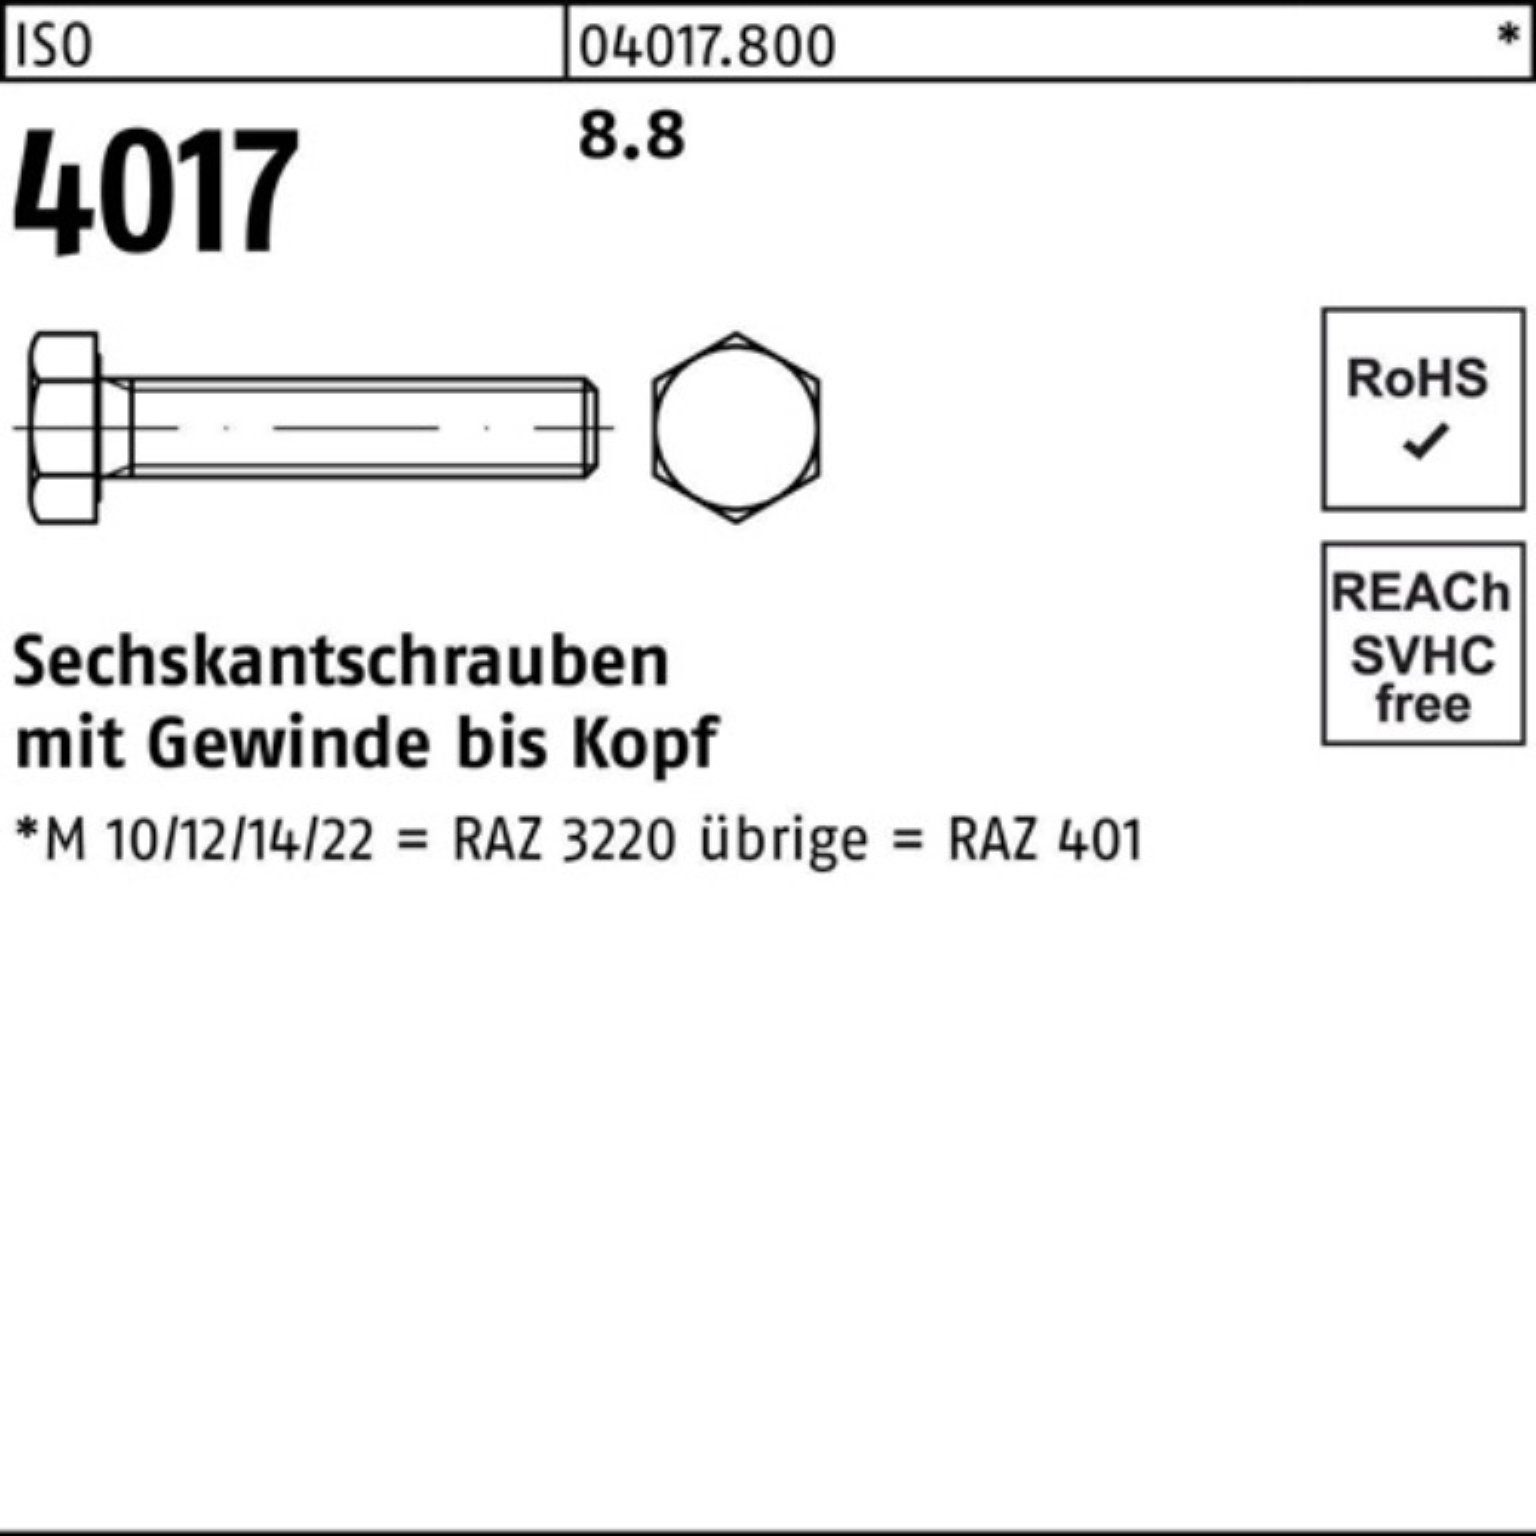 Sechskantschraube VG ISO 190 Pack 100er 8.8 M36x Sechskantschraube 4017 Stück 1 401 ISO Bufab